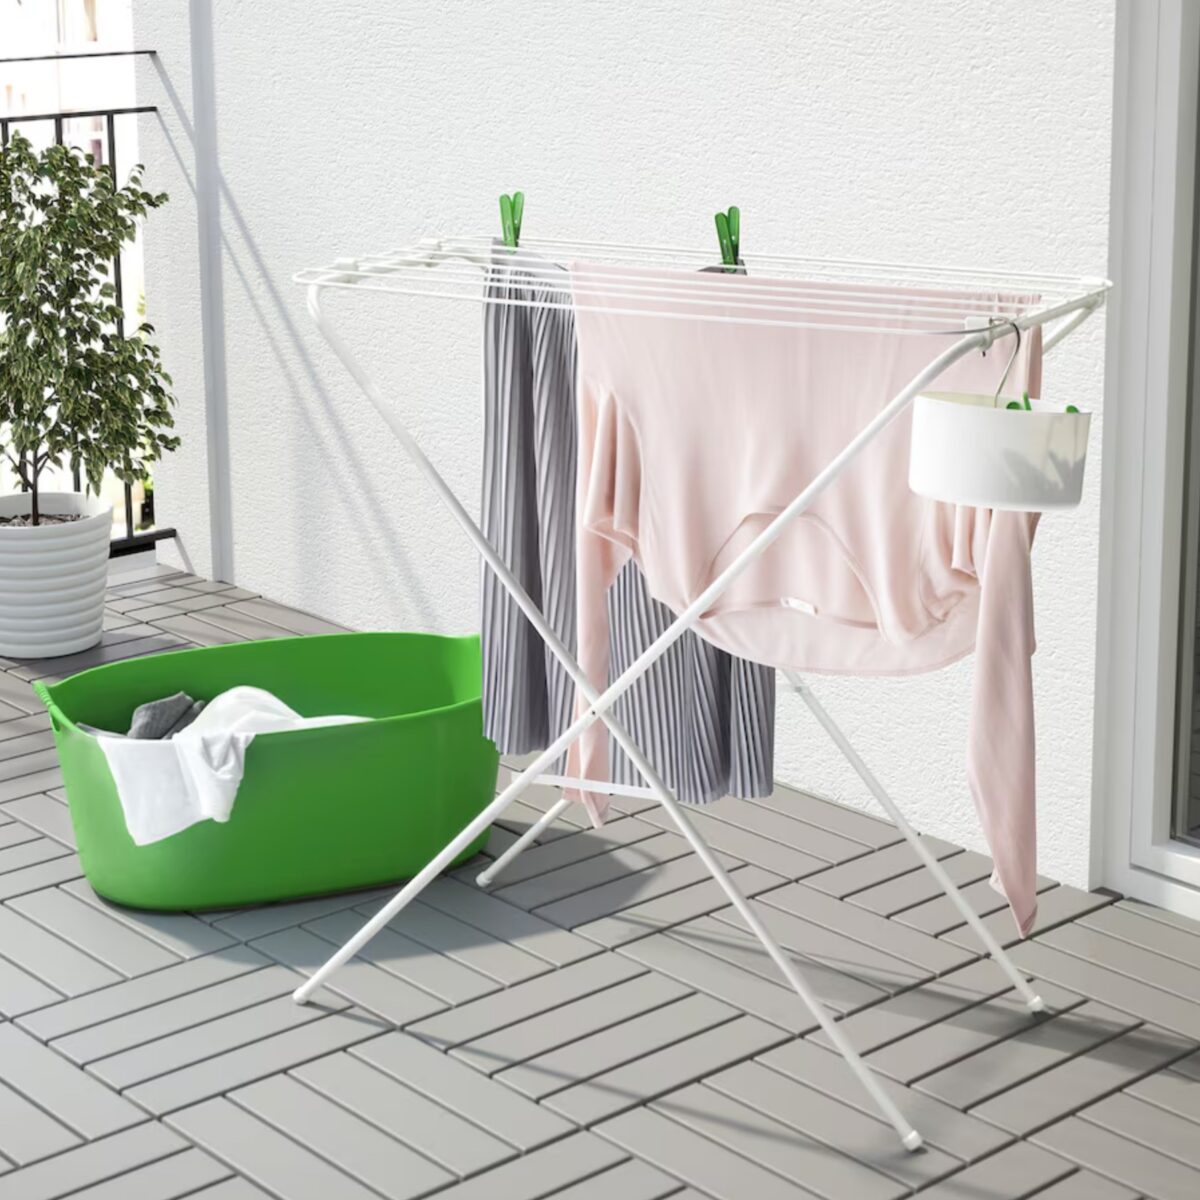 lavanderia in balcone: con ikea diventa più semplice